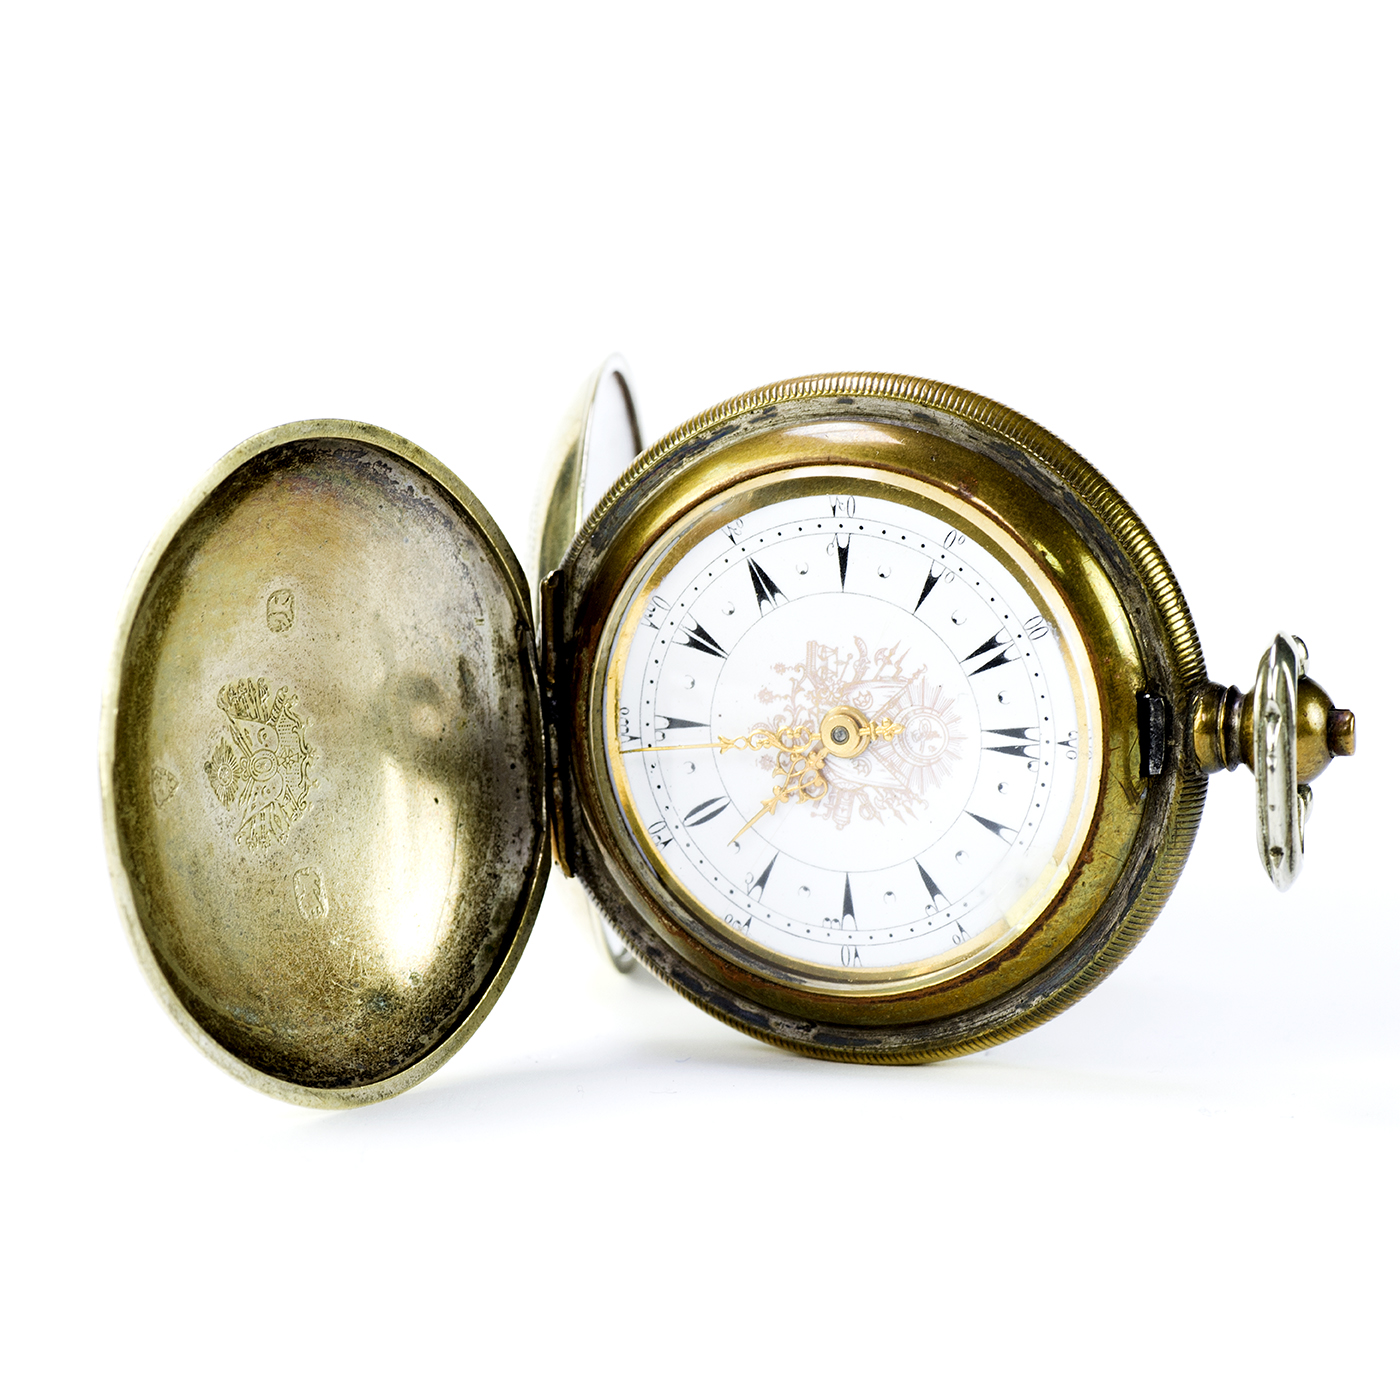 Reloj Suizo de Bolsillo, saboneta, para mercado turco, Suiza, ca. 1890